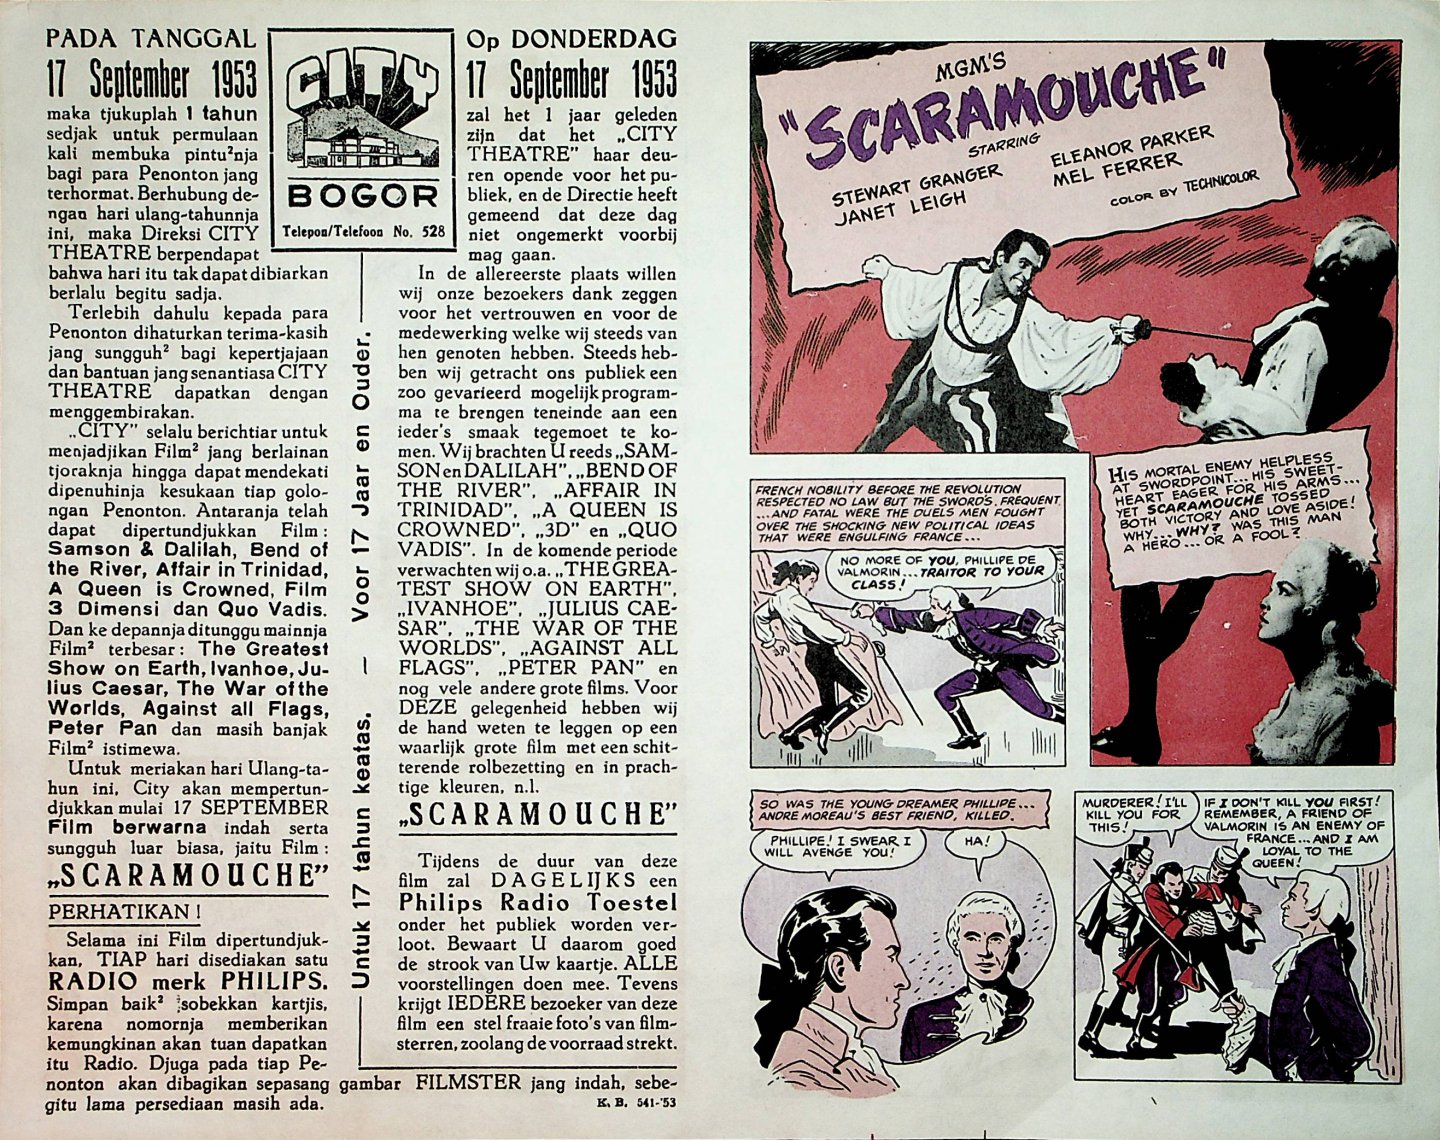 Scaramouche - Affiche voor de filmvertoning van de Amerikaanse film Scaramouche in het City Theatre in Bogor (Java) vanaf donderdag 17 september 1953